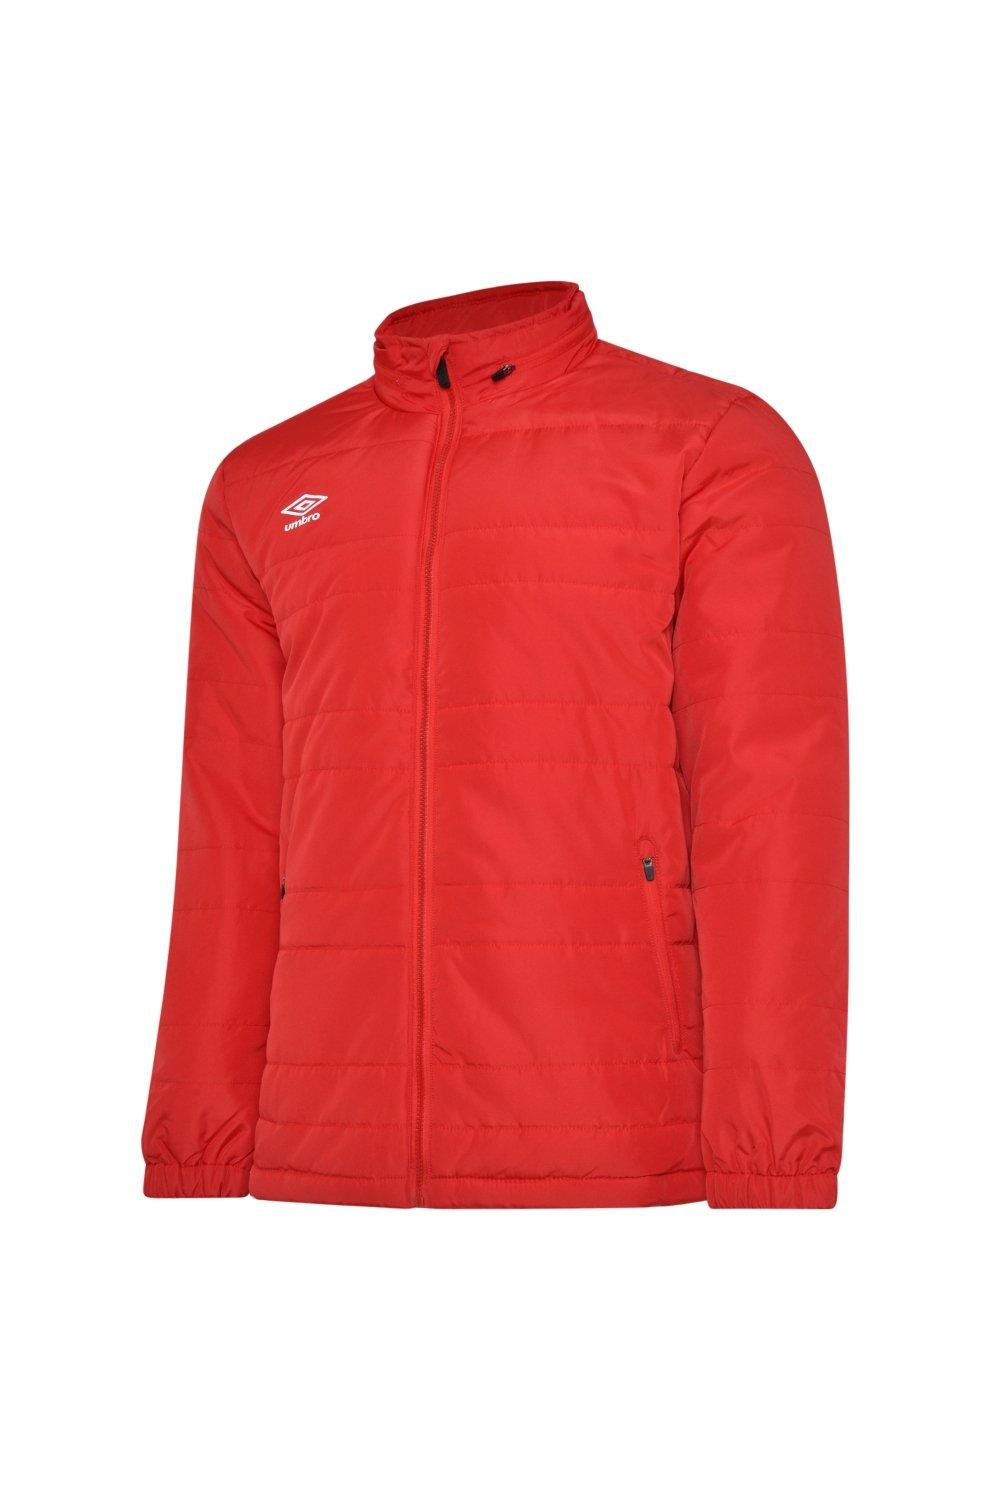 цена Скамья-куртка Umbro, красный